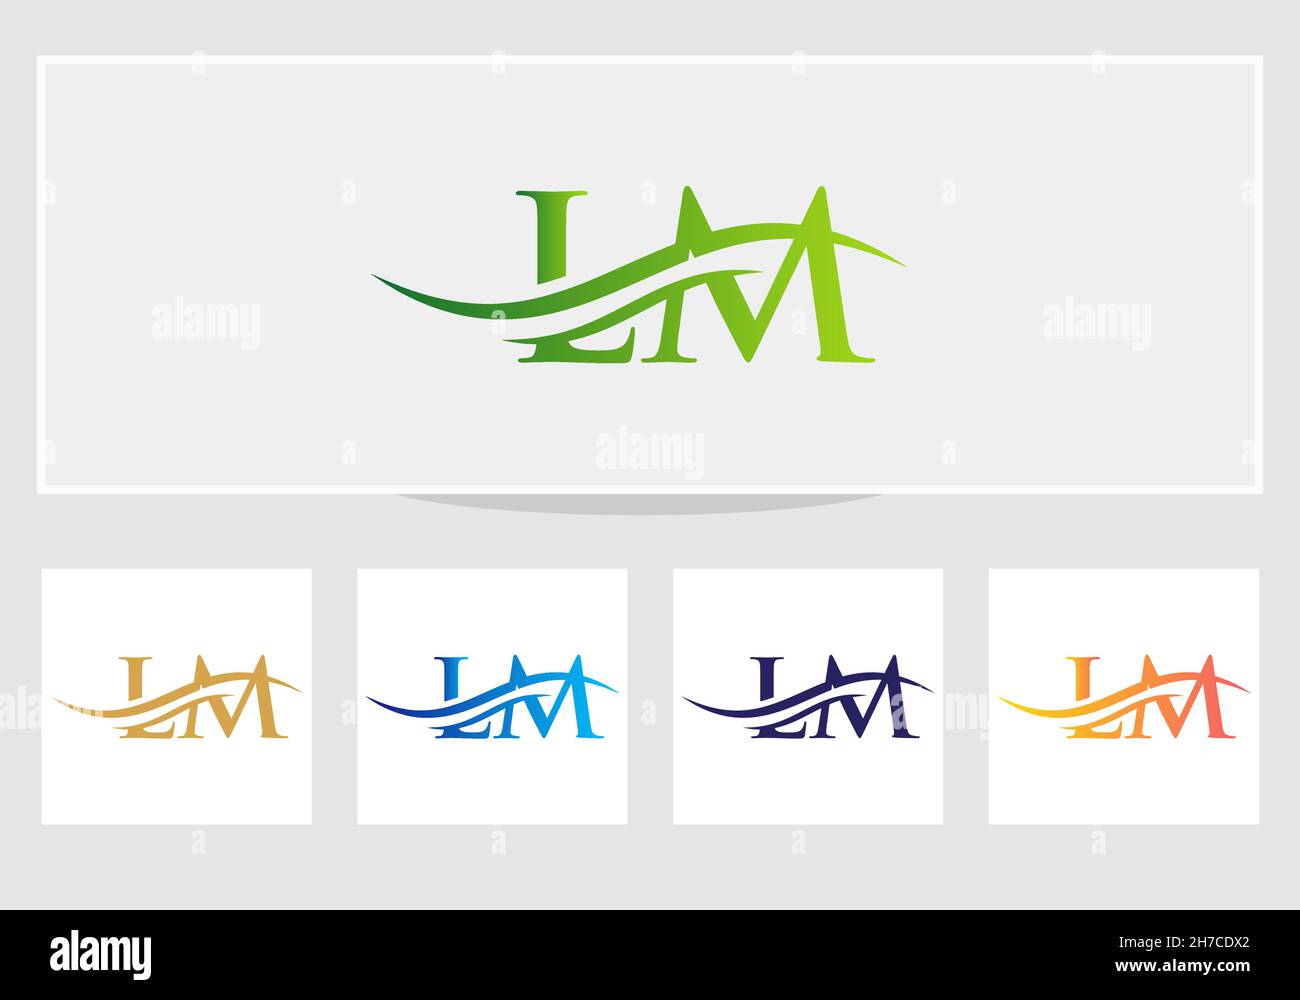 Vettore di disegno del logo LM. Swoosh lettera LM logo design. Modello vettoriale del logo collegato alla lettera LM iniziale Illustrazione Vettoriale